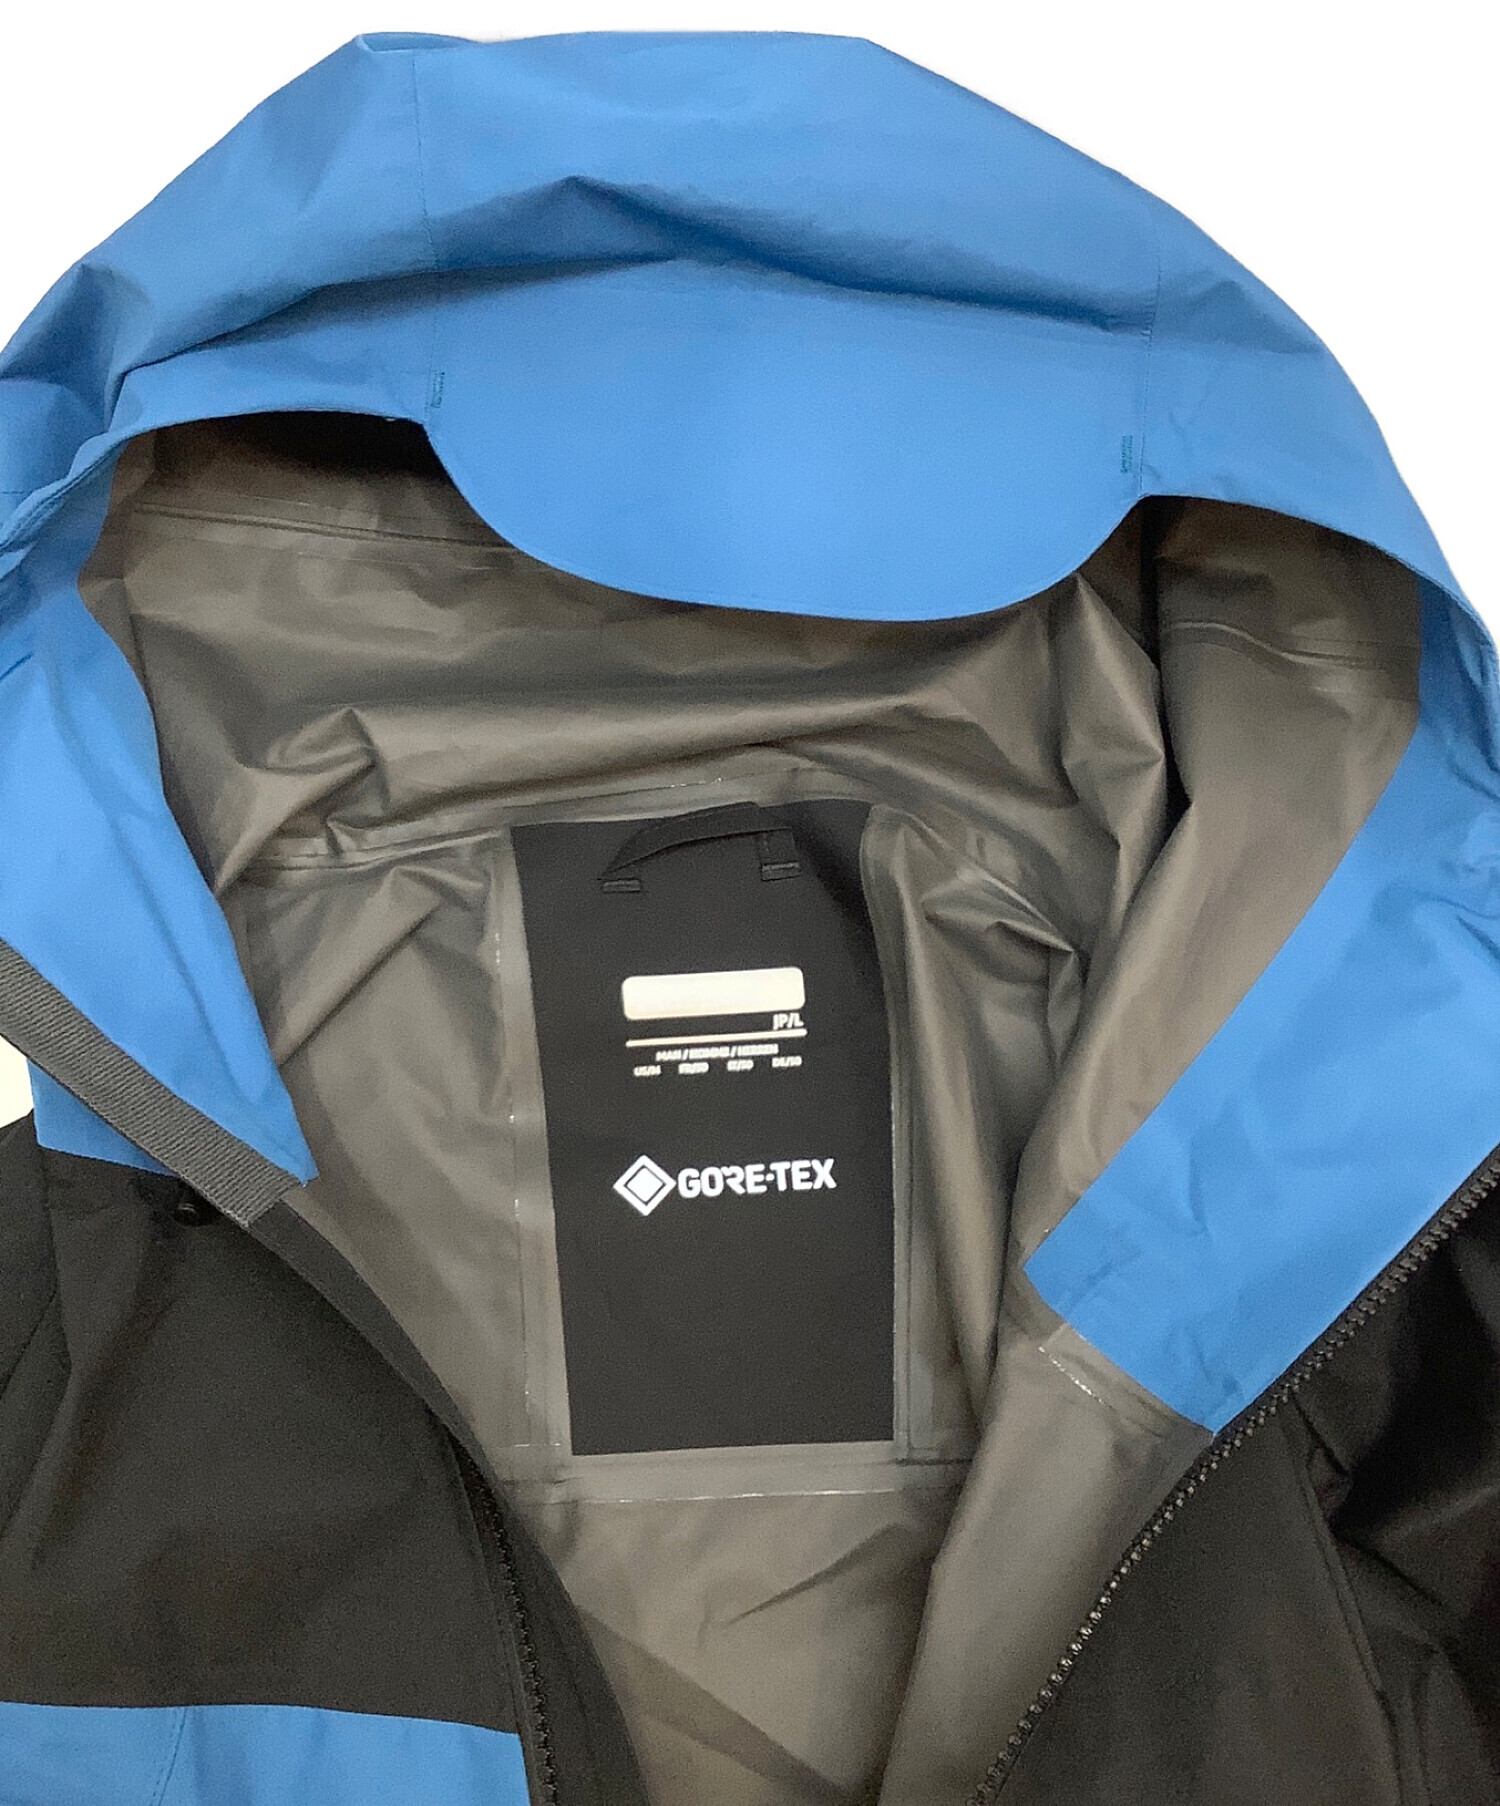 MARMOT (マーモット) クラウドブレーカージャケット ブルー サイズ:L 未使用品